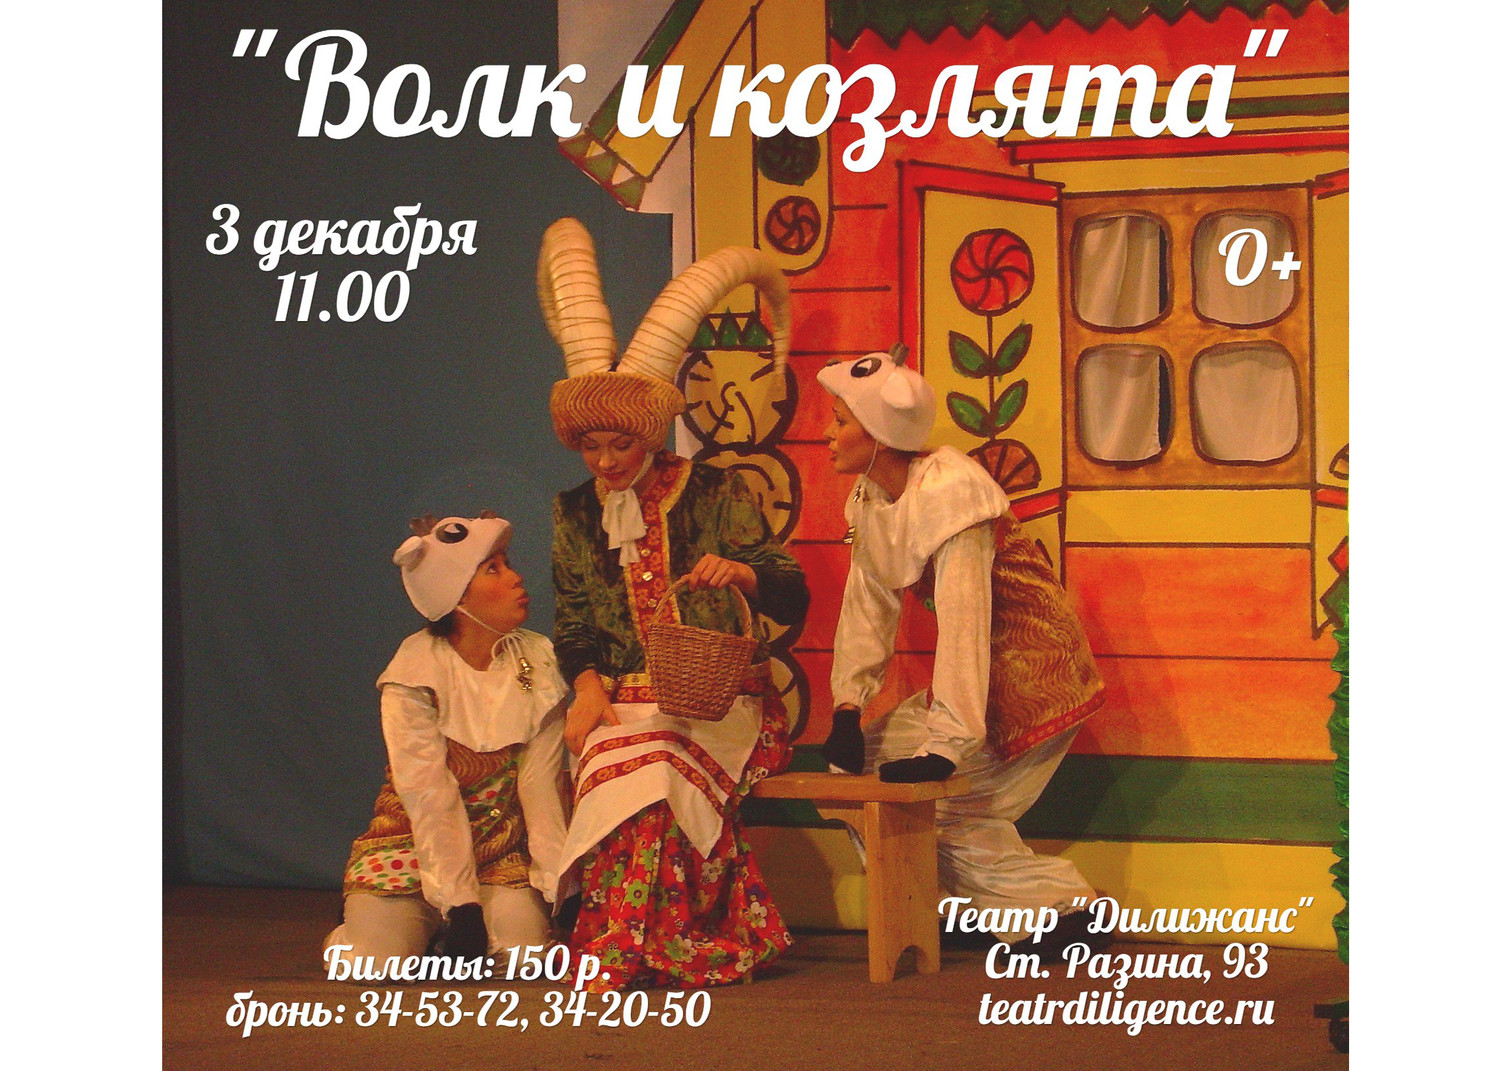 Проводим розыгрыш билетов на спектакль "Волк и козлята" (3 дек. 11.00)